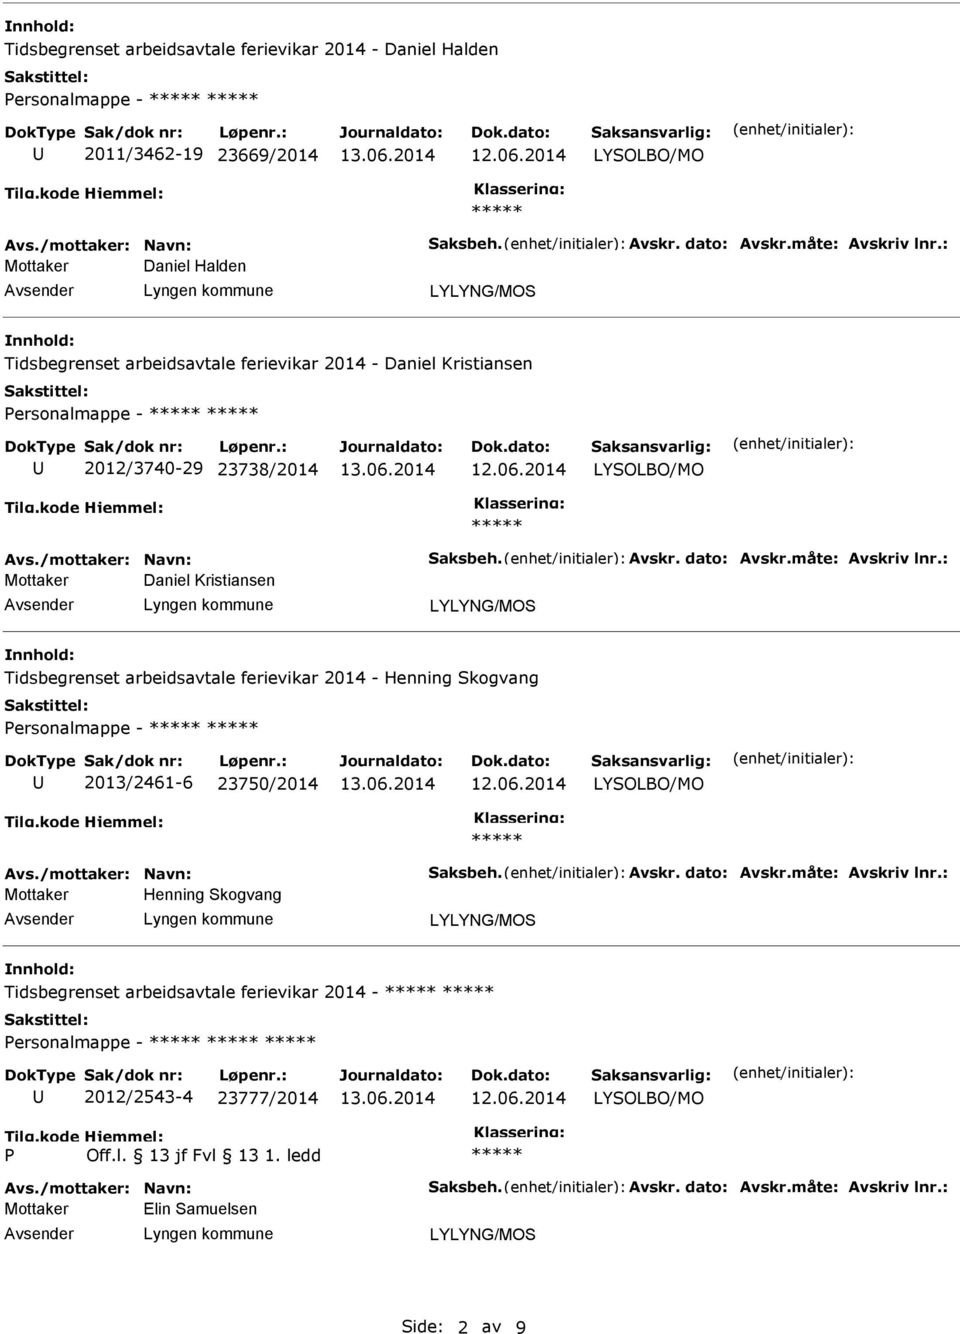 Tidsbegrenset arbeidsavtale ferievikar 2014 - Henning Skogvang Personalmappe - 2013/2461-6 23750/2014 Mottaker Henning Skogvang